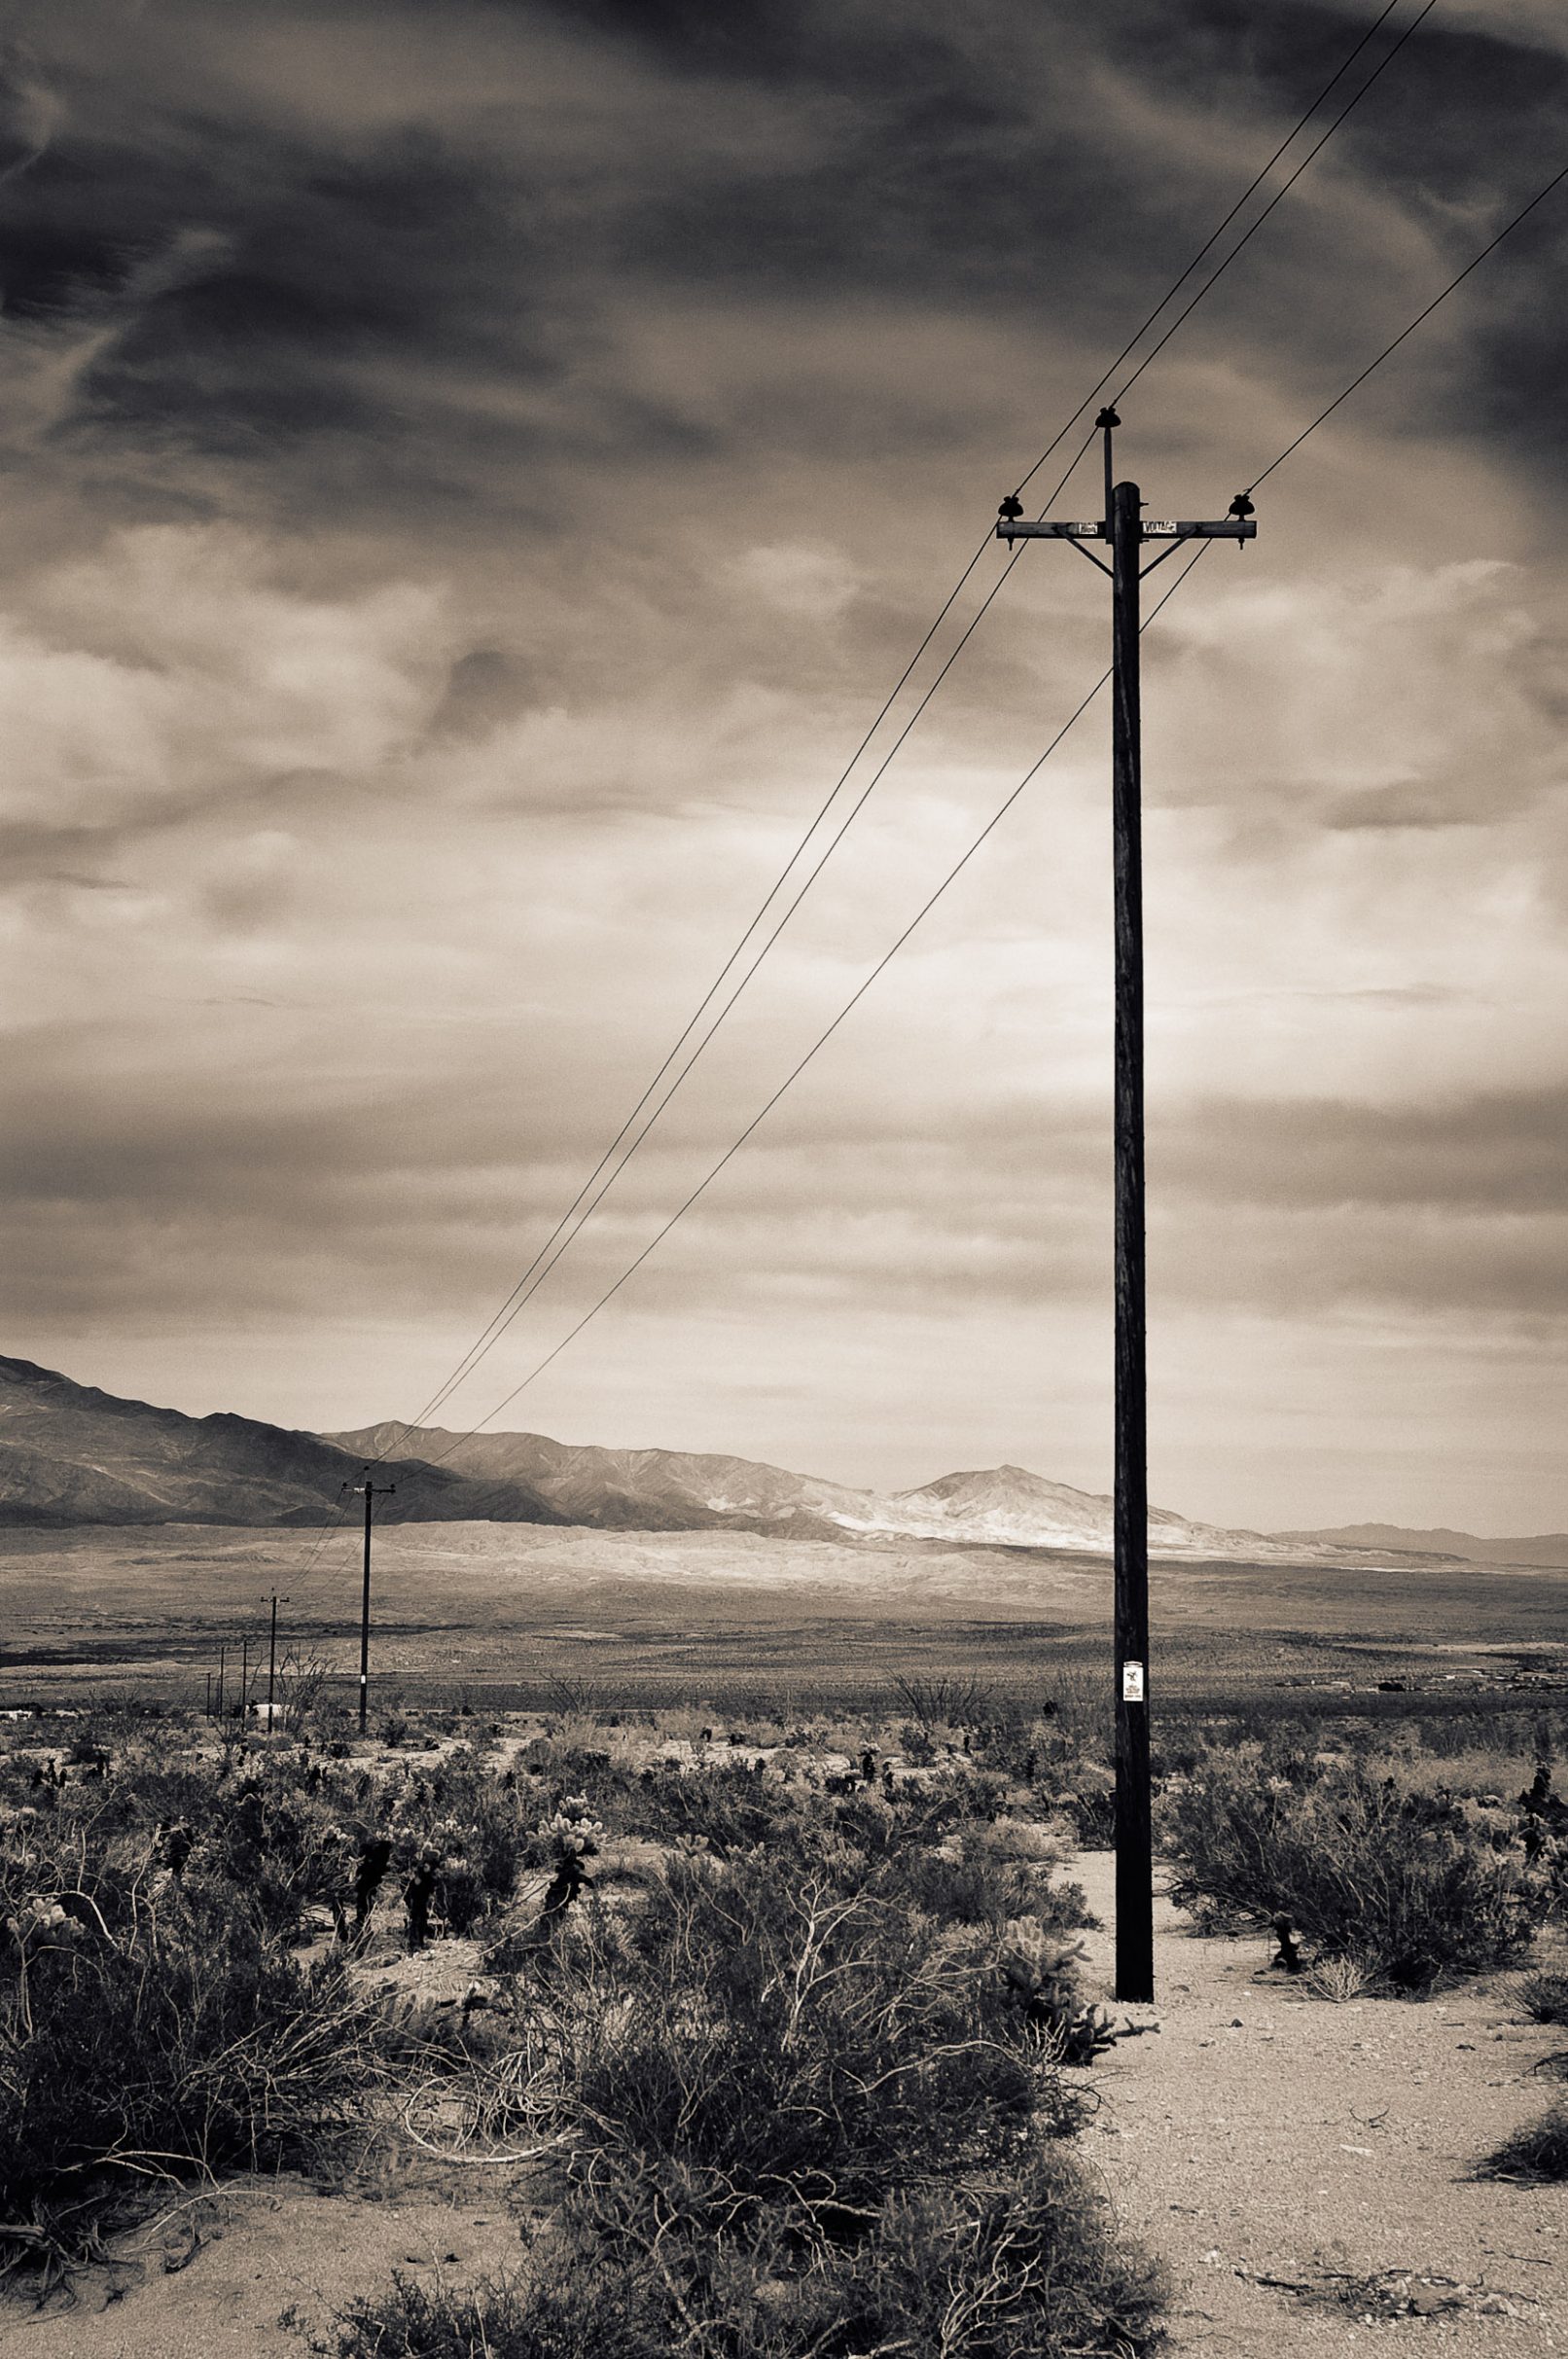 Telephone poles in Anza-Borrego Desert